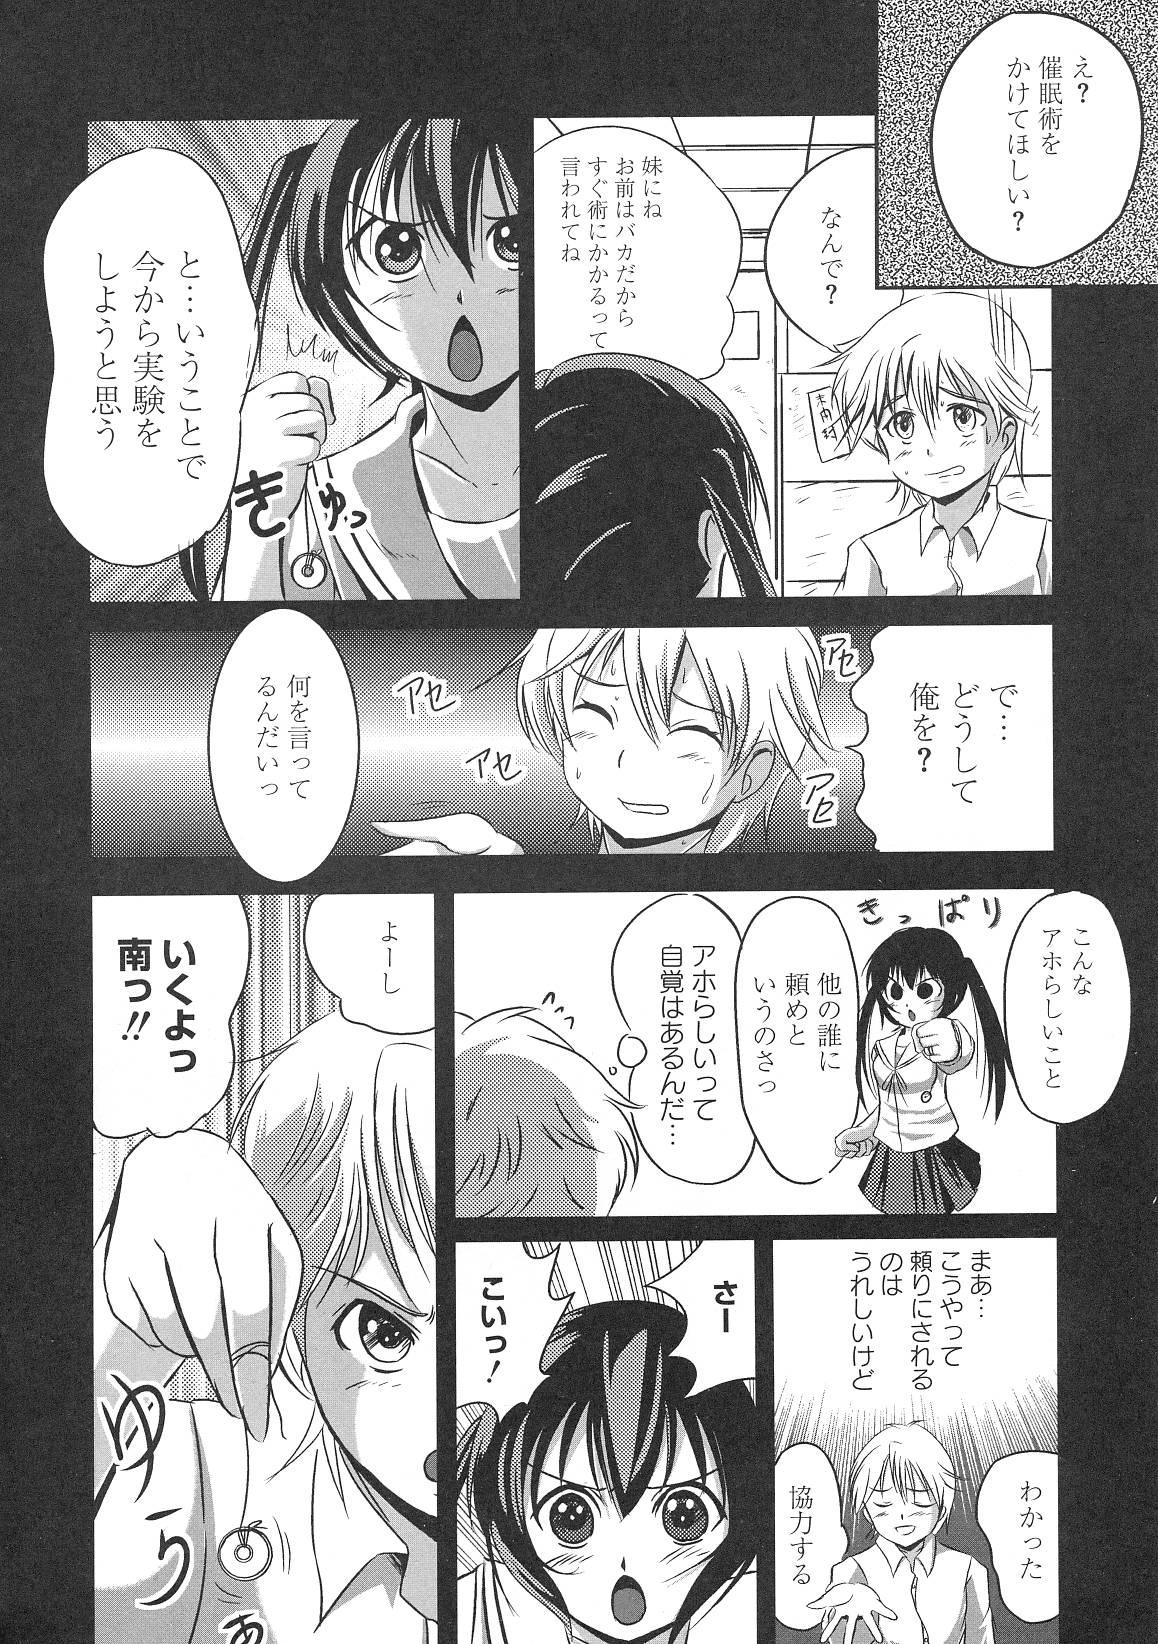 Mas Minami no Shikijou 3 Shimai - Minami-ke Slut Porn - Page 5